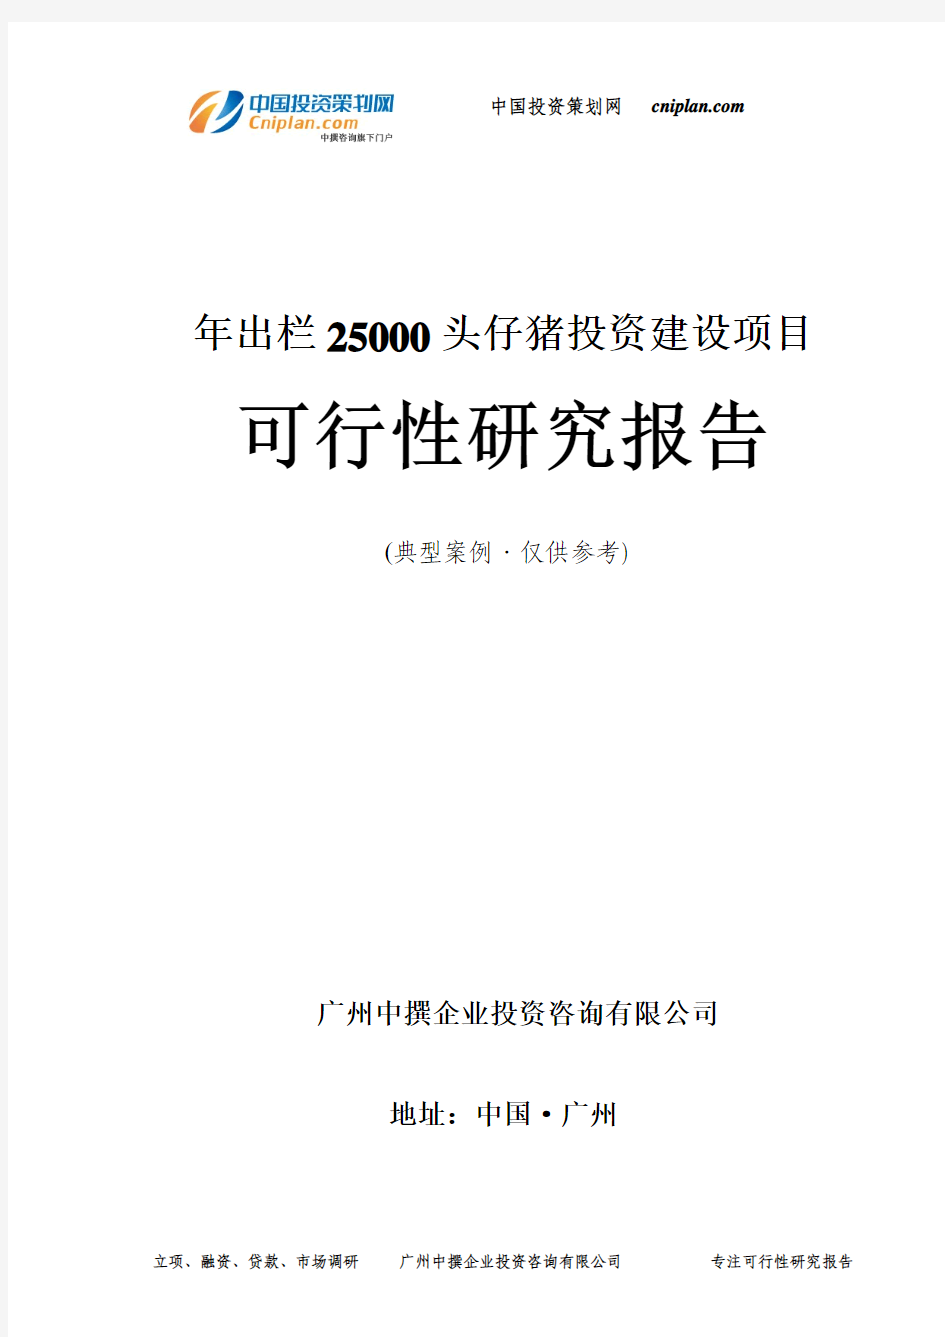 年出栏25000头仔猪投资建设项目可行性研究报告-广州中撰咨询